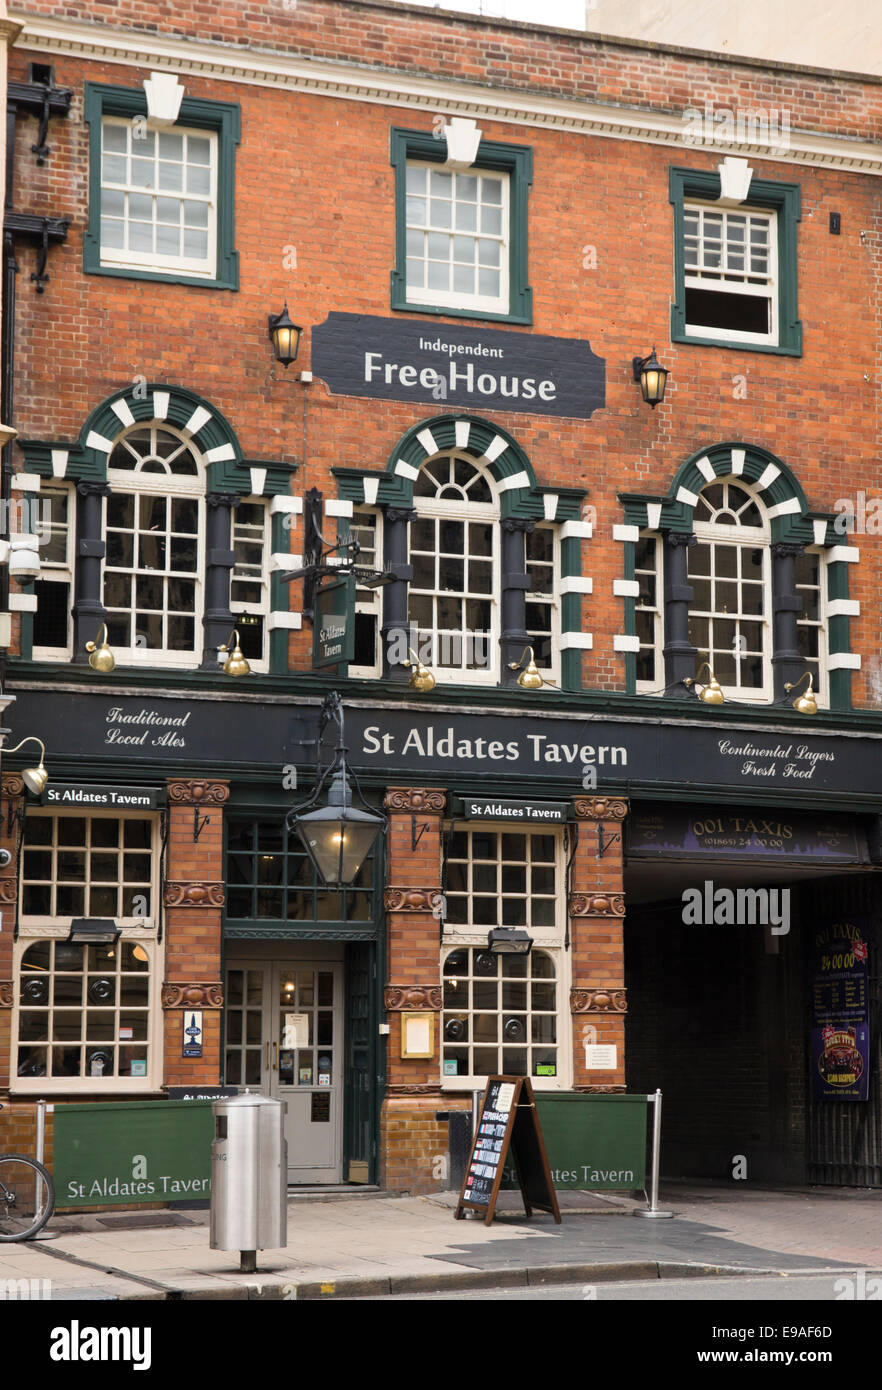 In Oxford Stadt, die historische Universitätsstadt in Oxfordshire, England UK St Aldates Tavern Pub Stockfoto